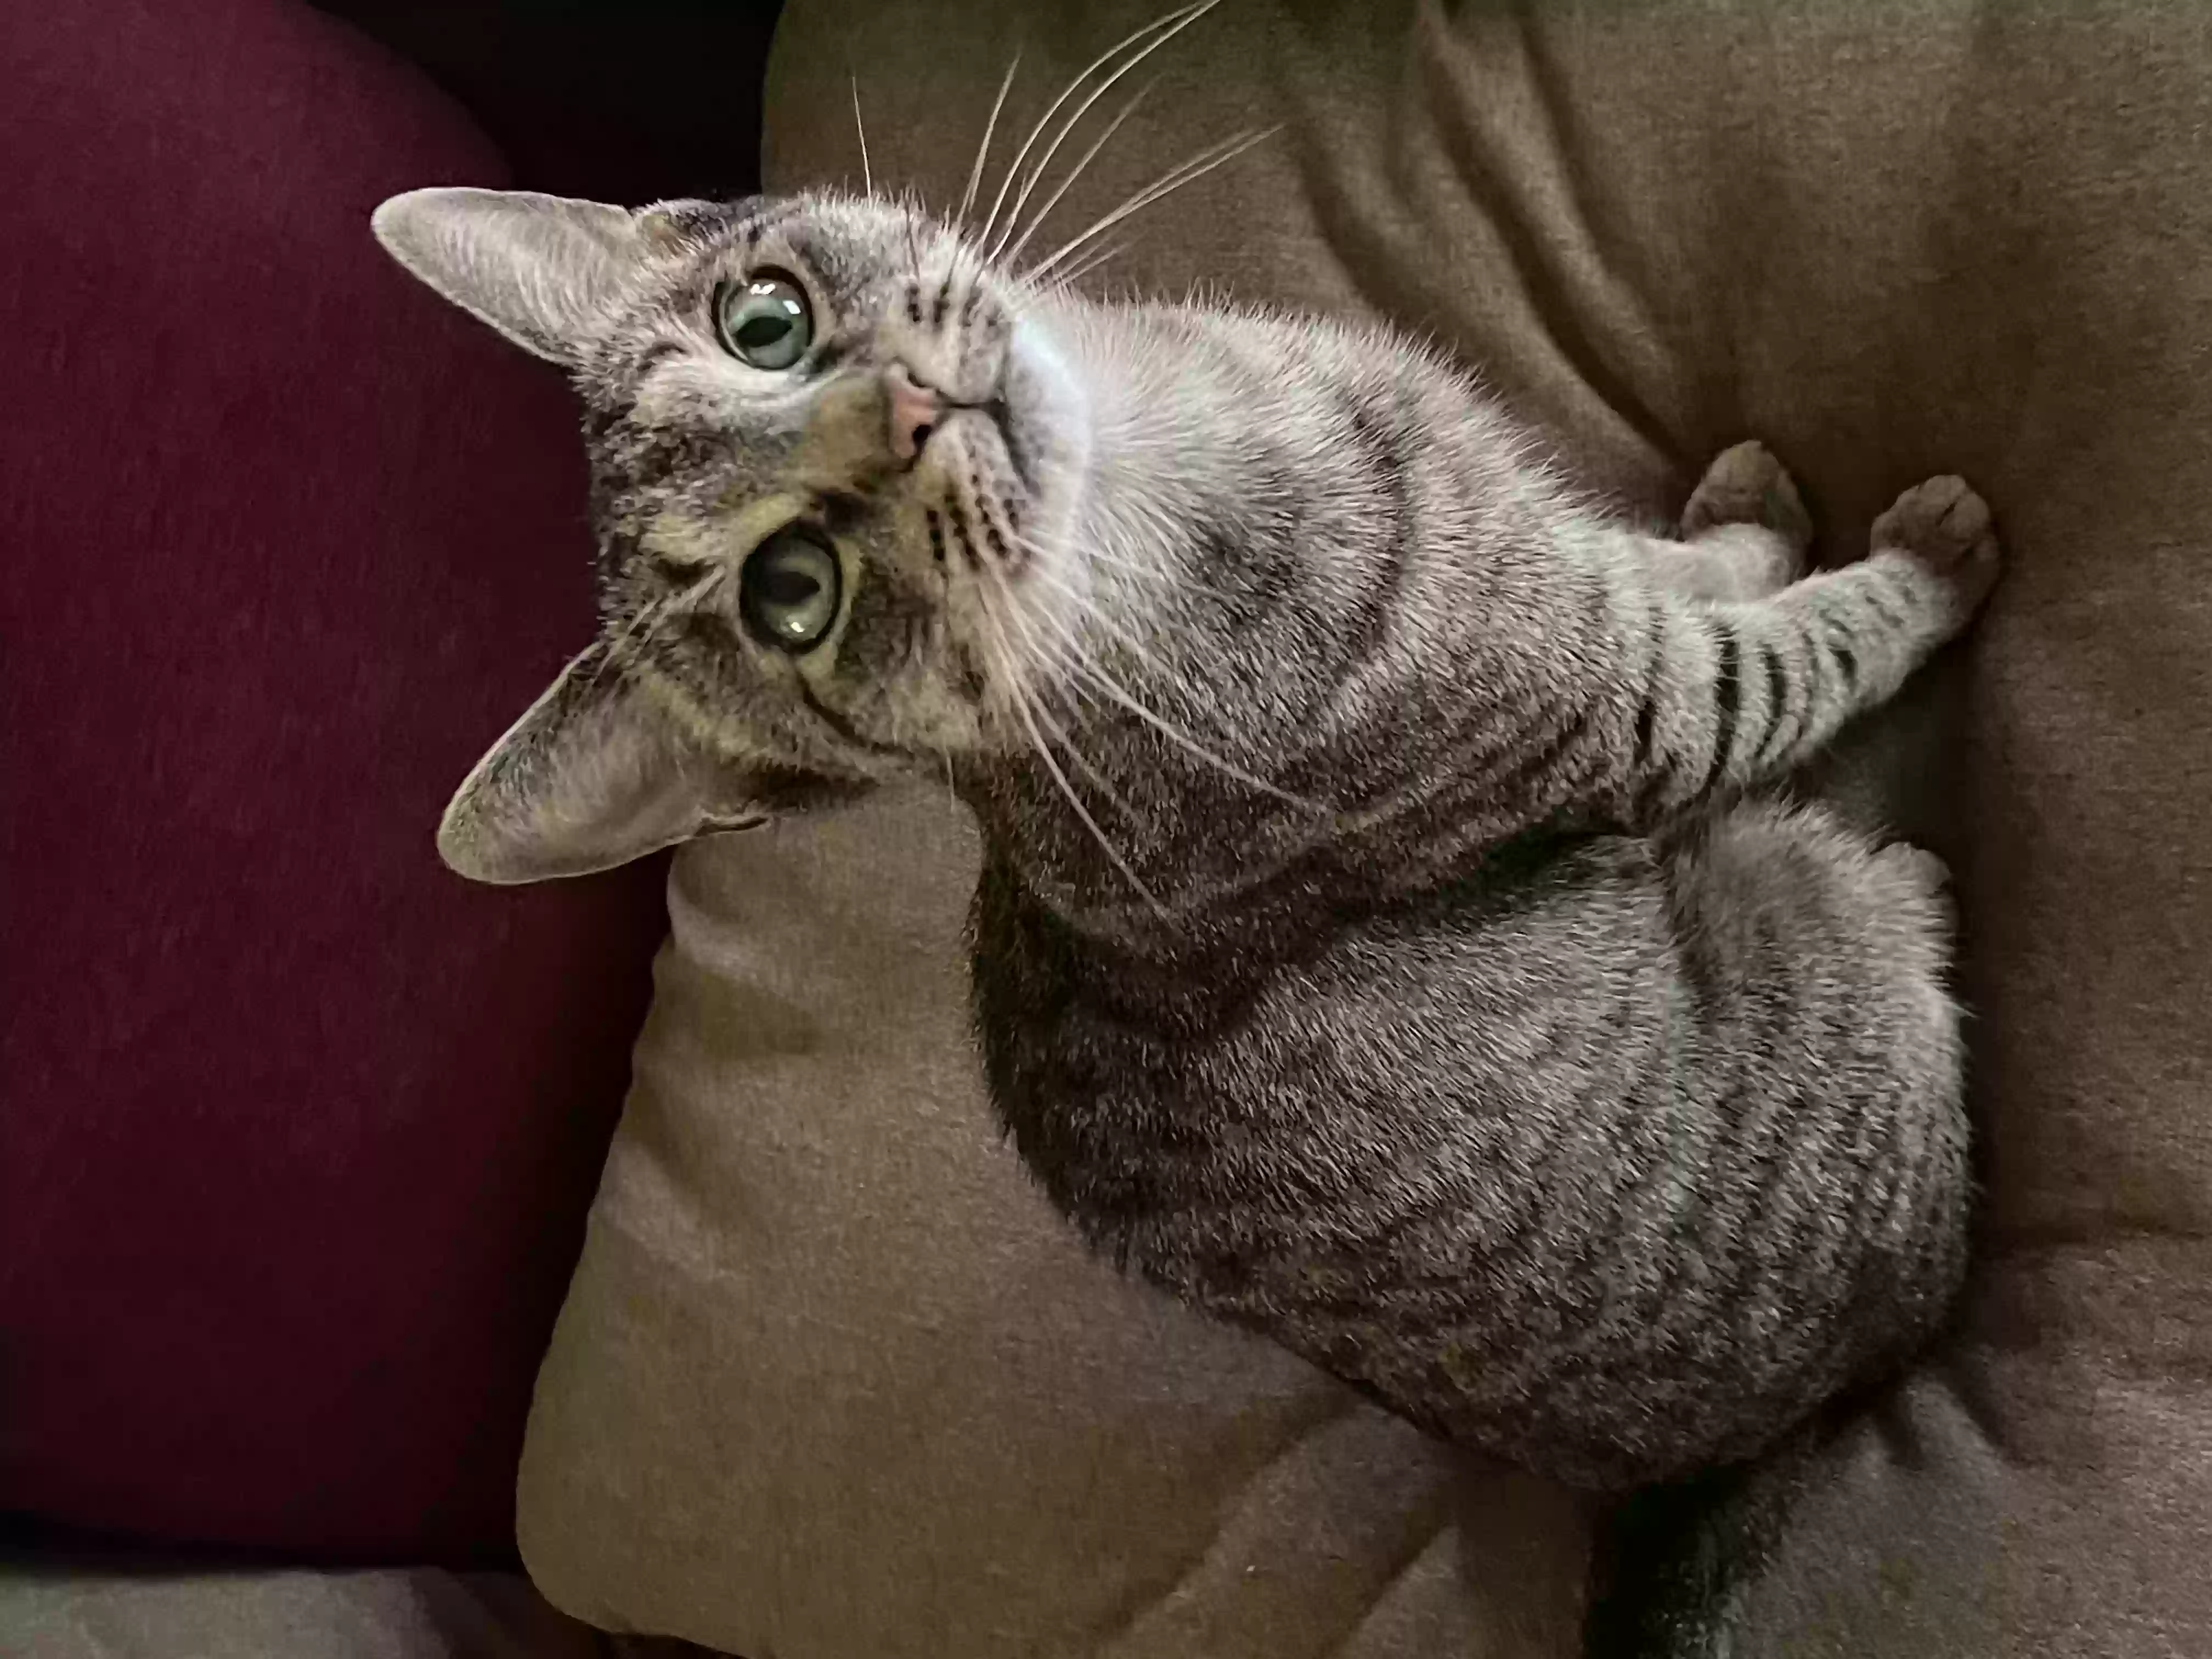 adoptable Cat in Rocky Point,NY named “Mama”